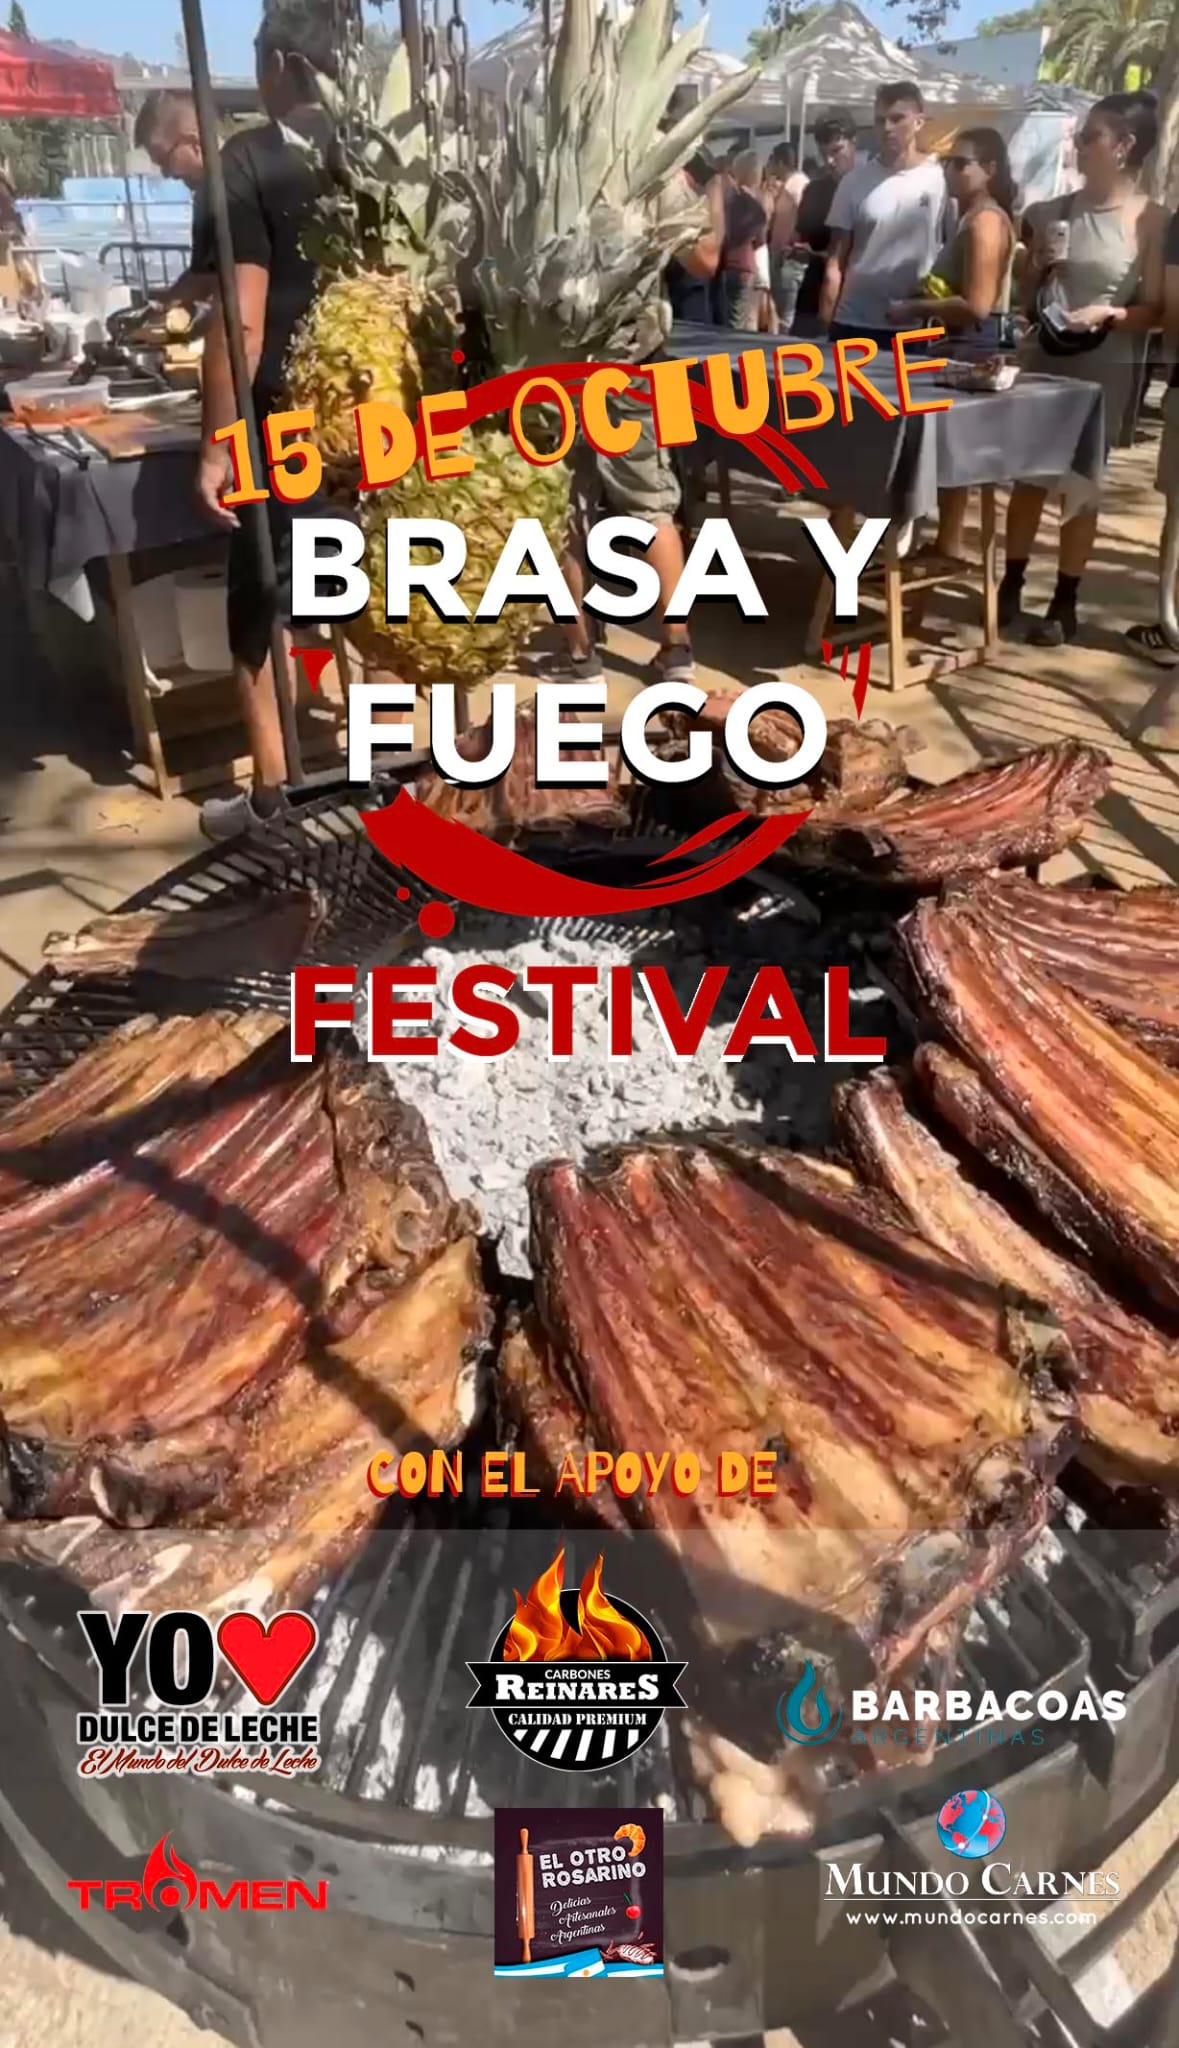 Festival del Asado Argentin - Los Foodistas